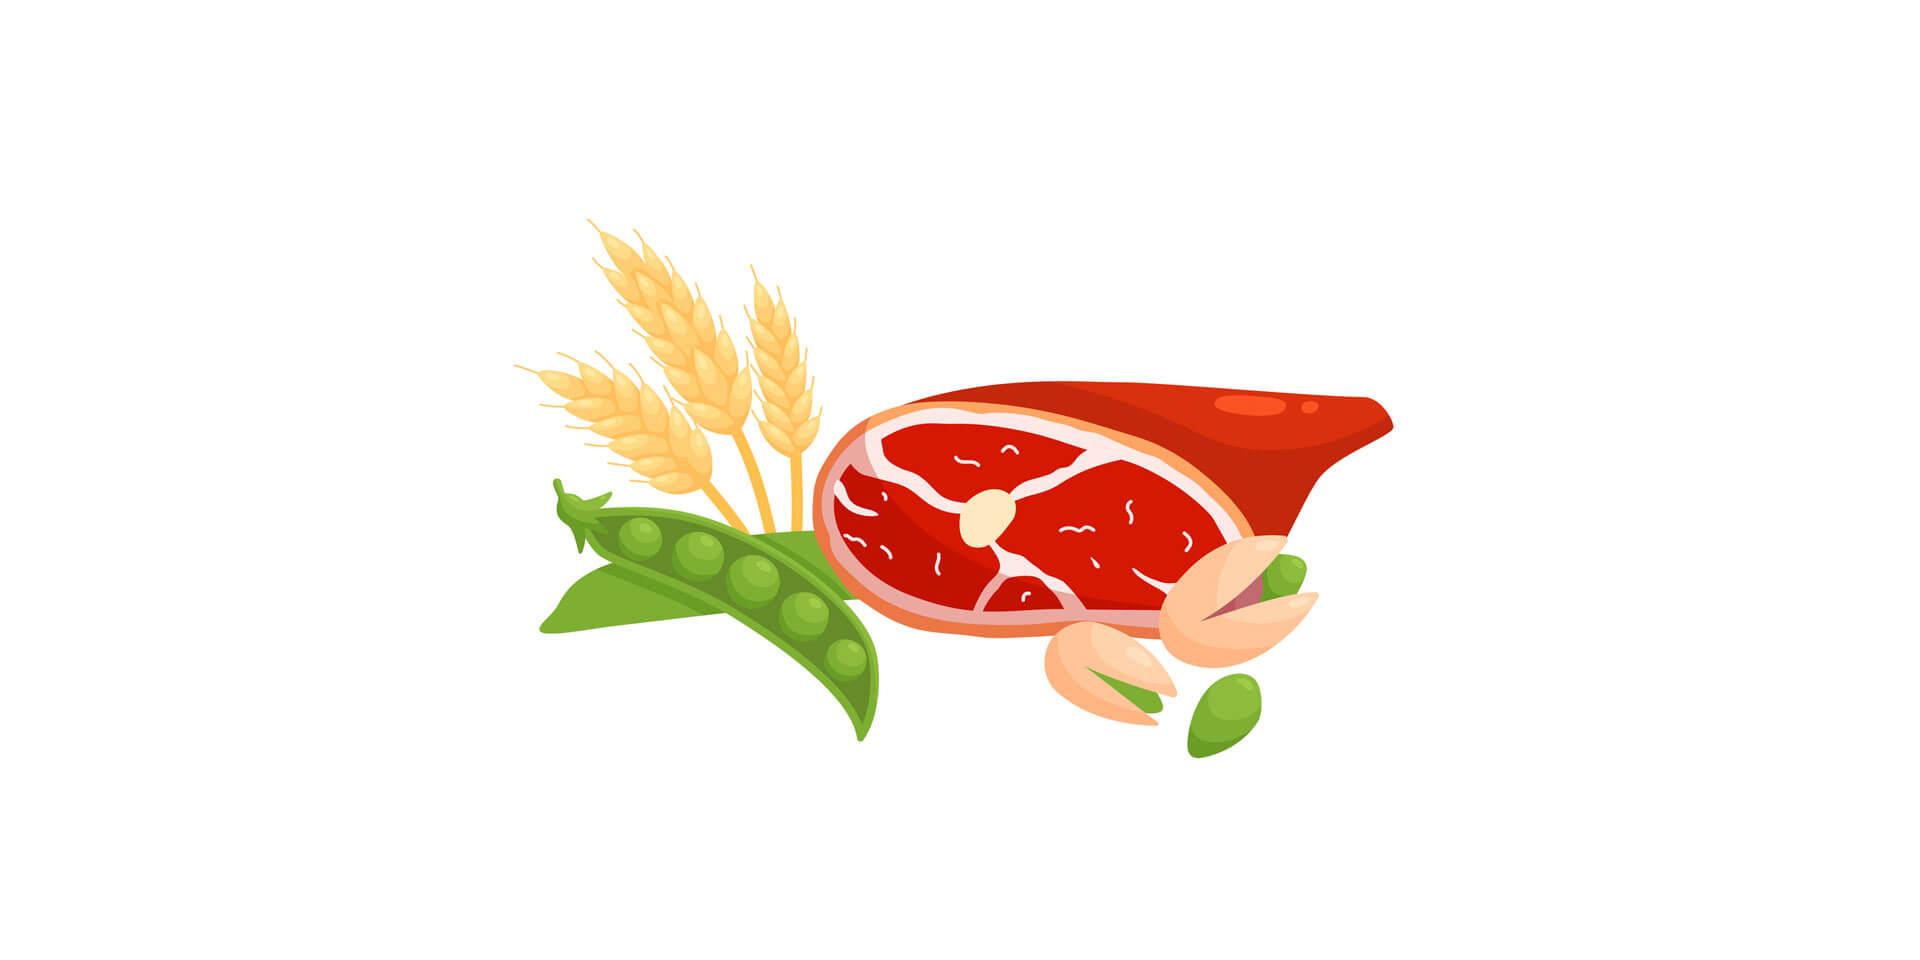 Lebensmittelzutaten &#8211; frisches Fleisch, Weizen, Pistazien und grüne Bohnen &#8211; flache vektorillustration lokalisiert auf weiß.